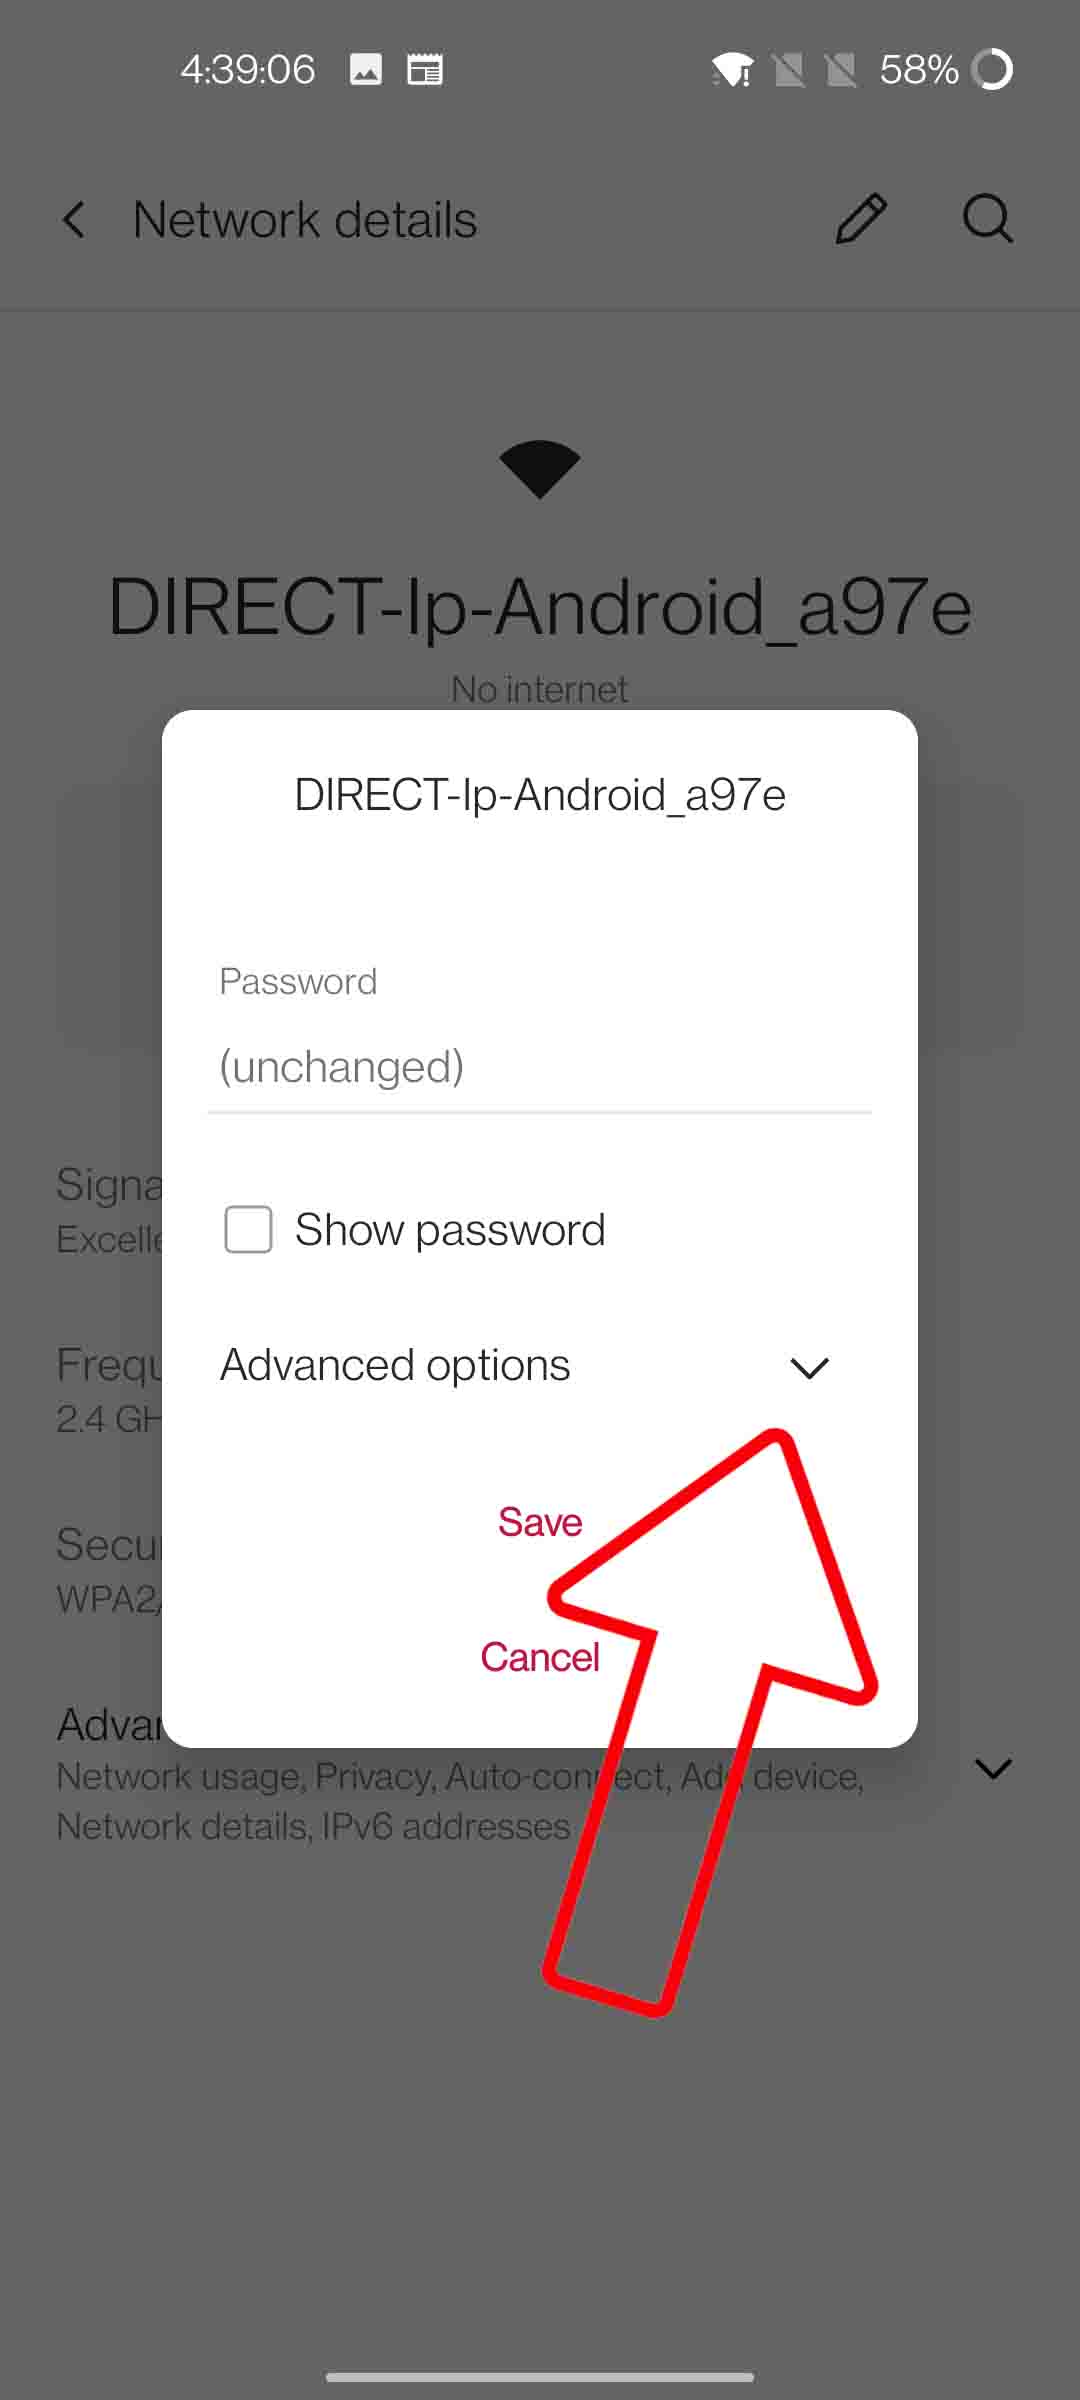 verkiezen naar voren gebracht wijsvinger 4 Ways to Use Your Android Phone as WiFi Repeater